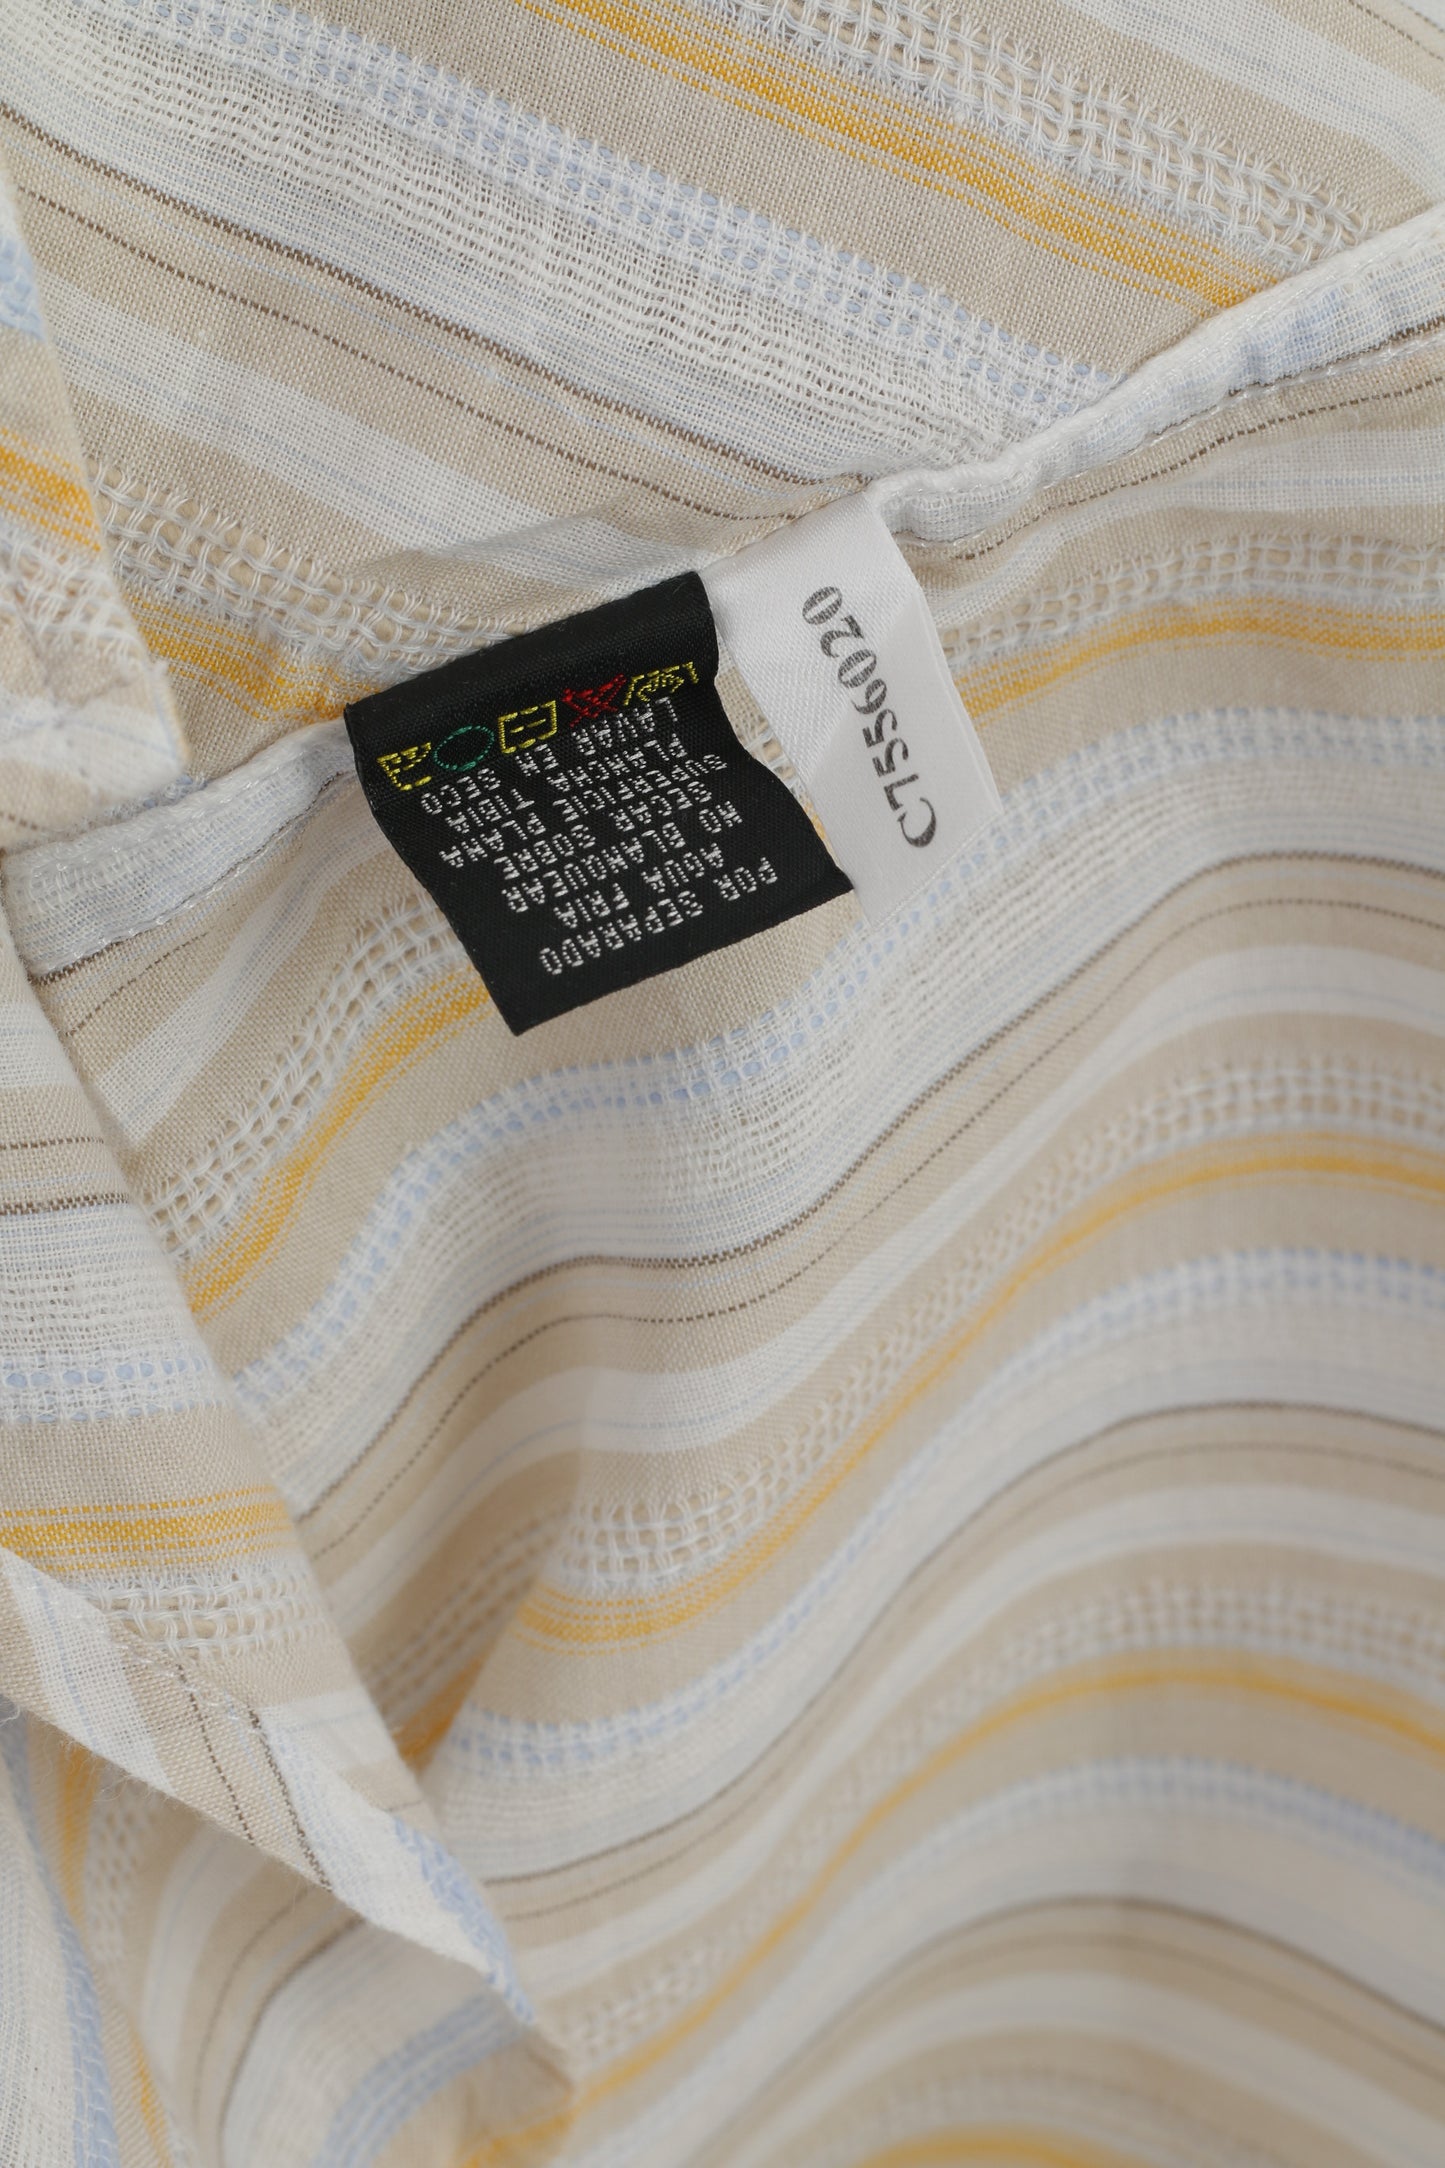 Kenneth Cole Camicia casual XL da uomo Top a maniche corte in cotone a righe beige